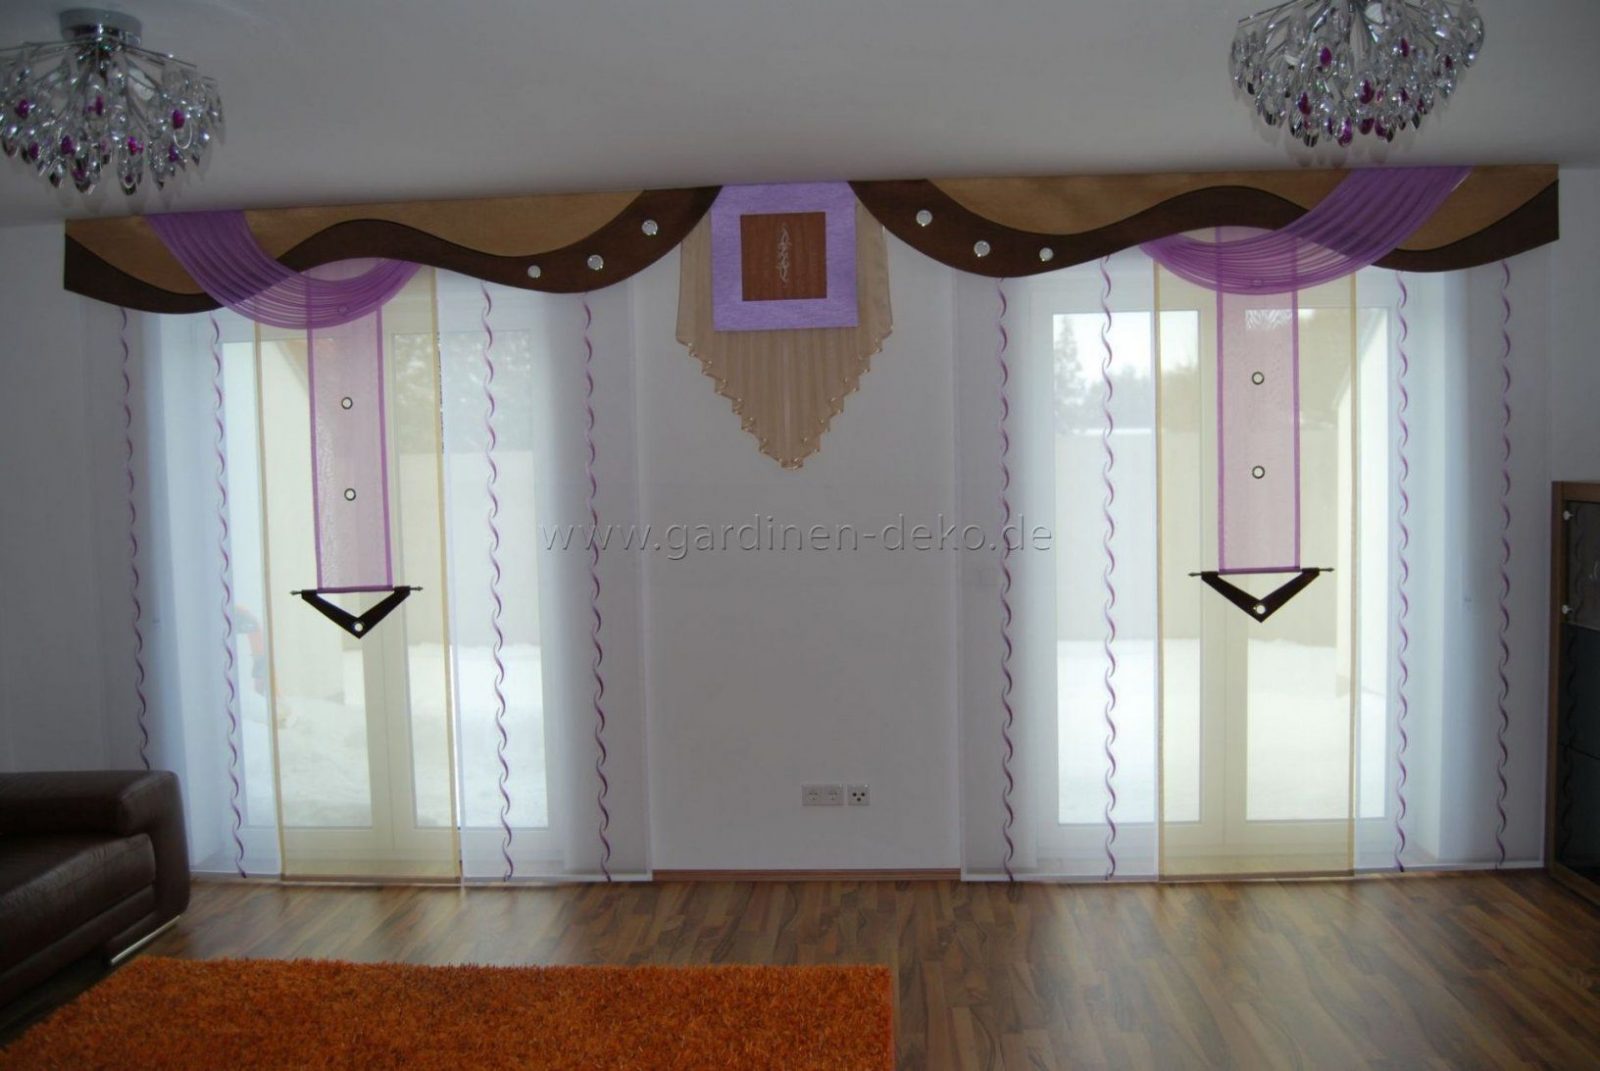 Wohnzimmer Schiebevorhang In Lilabeige Mit Braunen Bogen von Gardinen Muster Für Wohnzimmer Bild